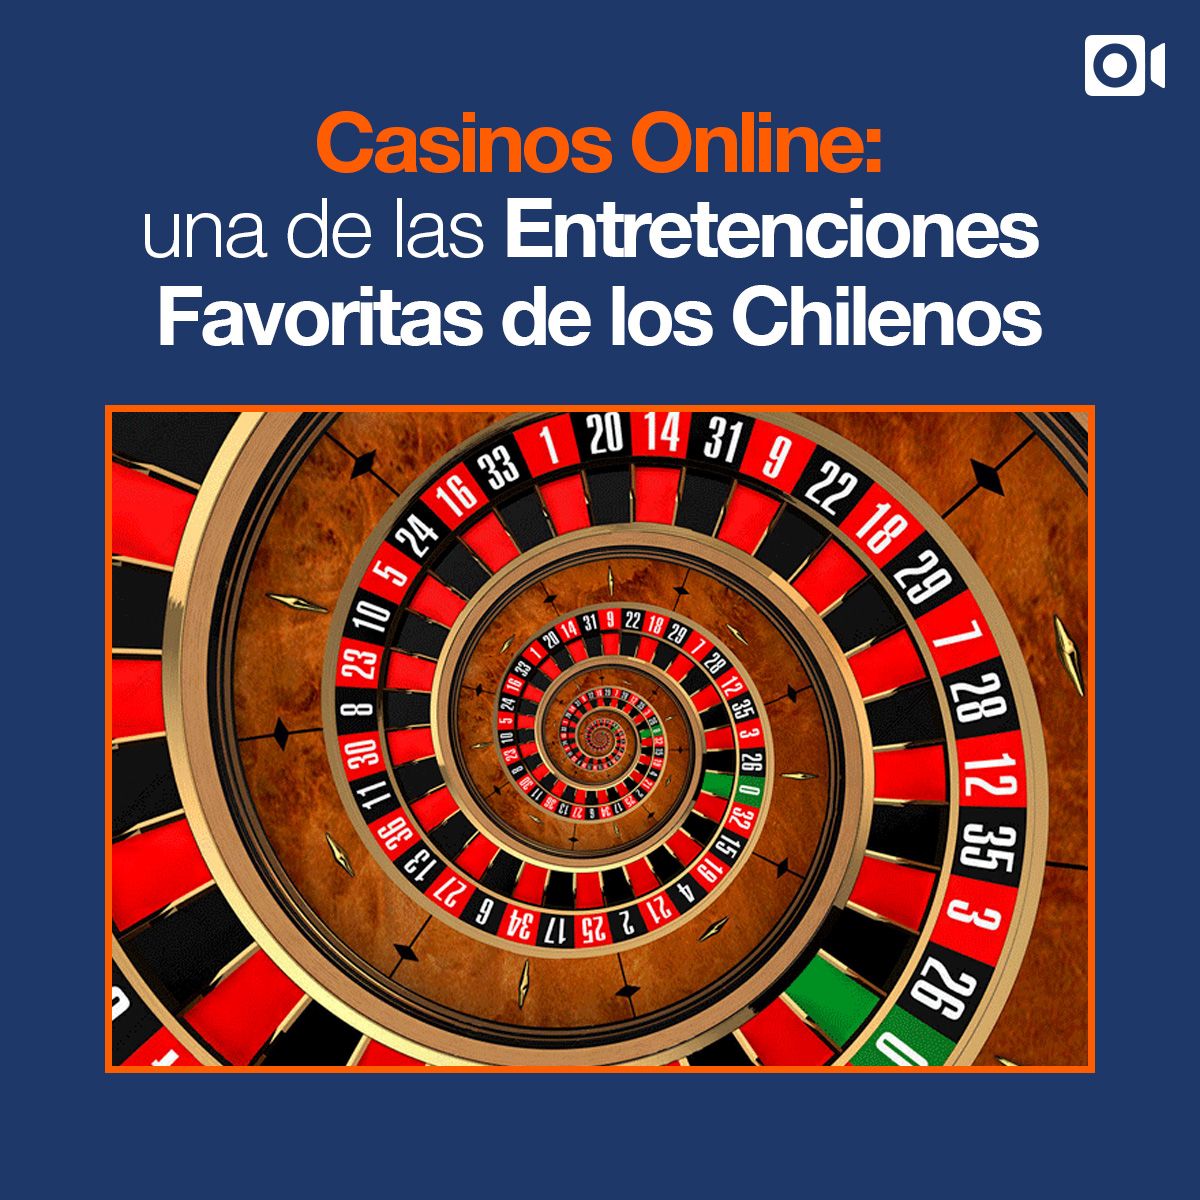 Casinos Online: una de las Entretenciones Favoritas de los Chilenos